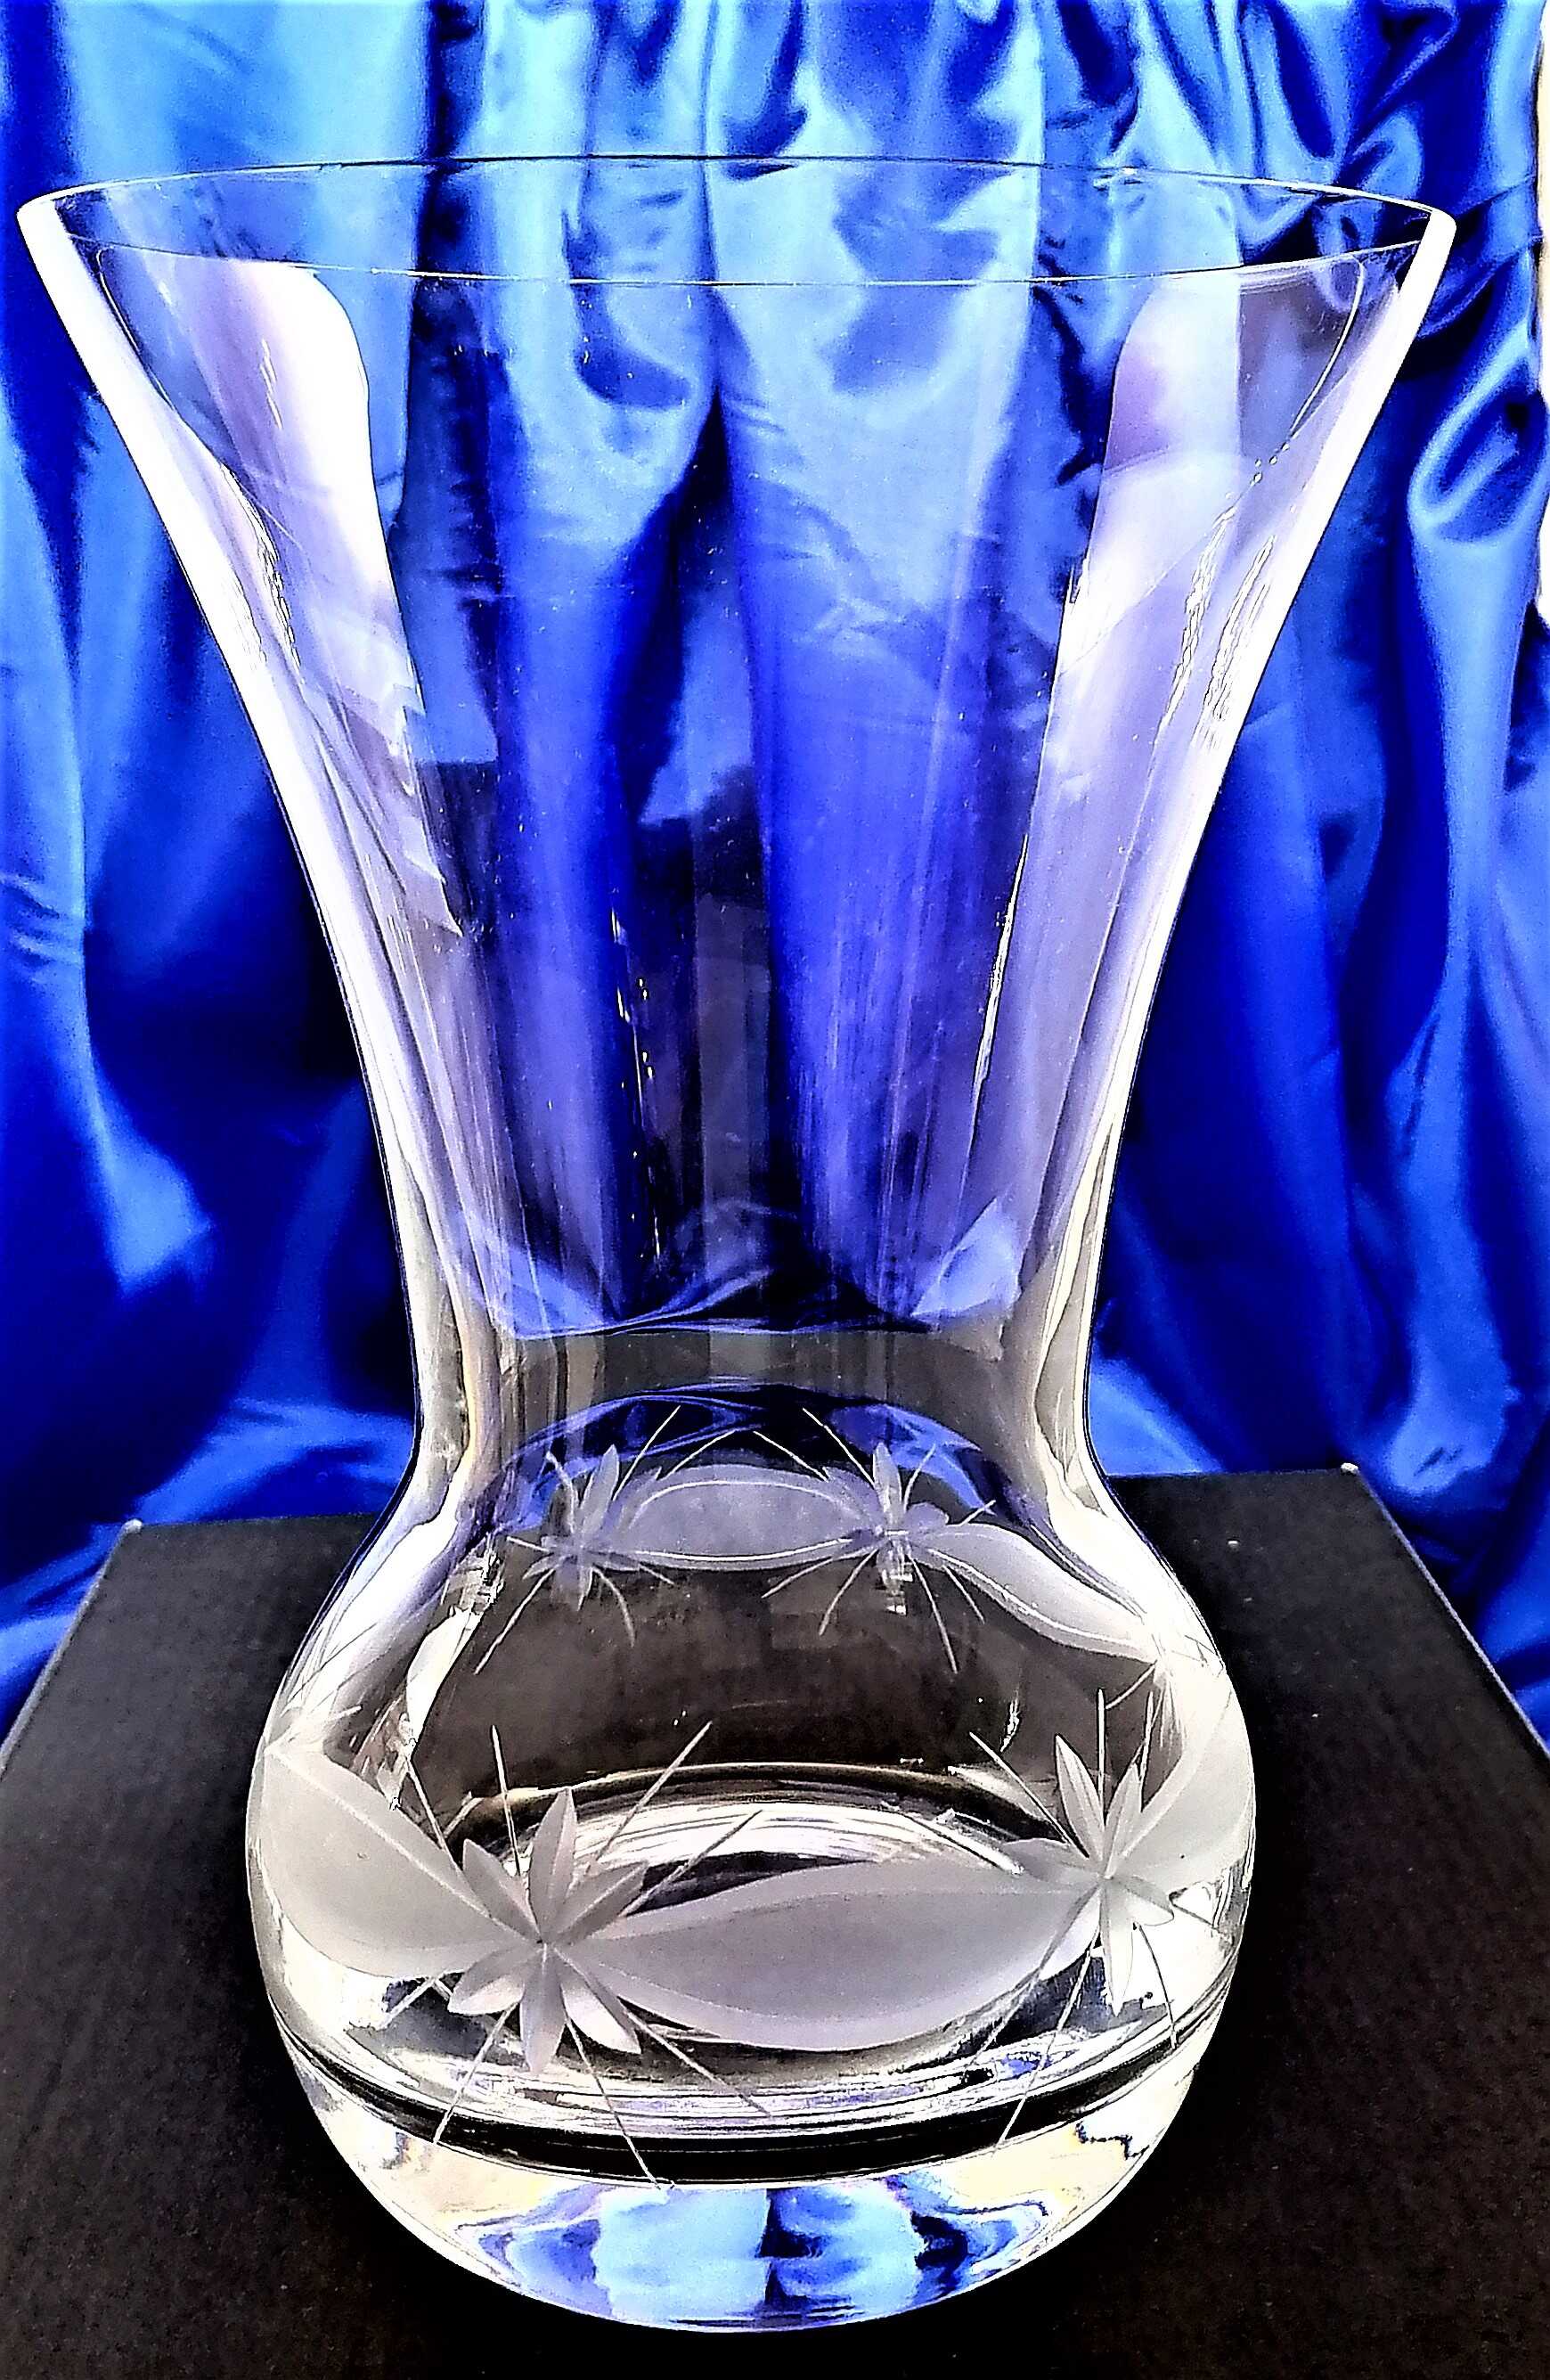 LsG-kristall Vase Hand geschliffen Kristallglas Kante WA-098 1125 ml 1 Stück.